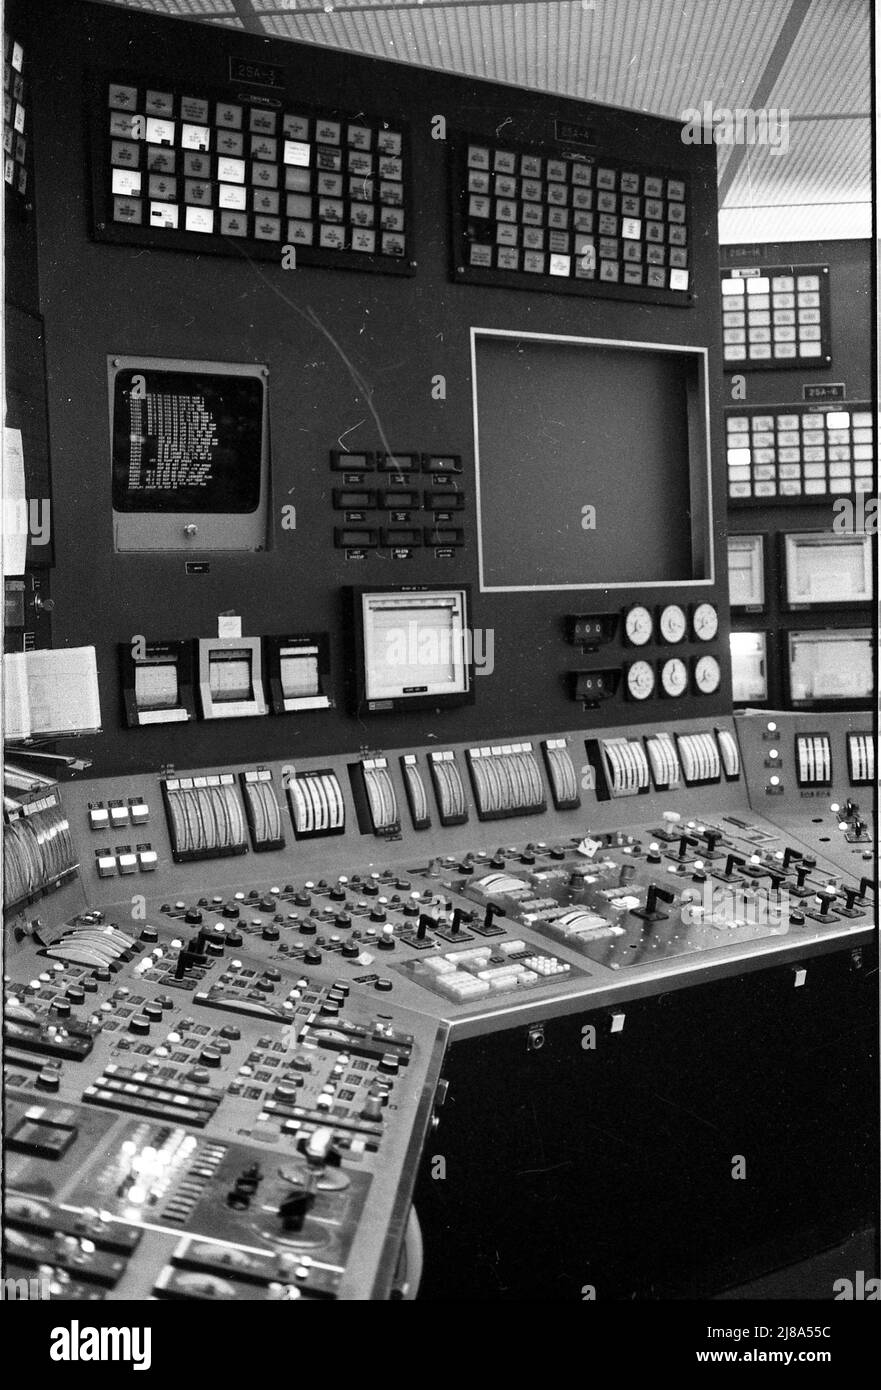 Das von der Duke Power Company 1979 betriebene Kernkraftwerk Oconee in South Carolina ist identisch mit dem Kraftwerk Three Mile Island, das einen Kernschmelzunglück hatte. Dies ist der Kontrollraum mit all den komplexen Steuerungen und Monitoren. Stockfoto